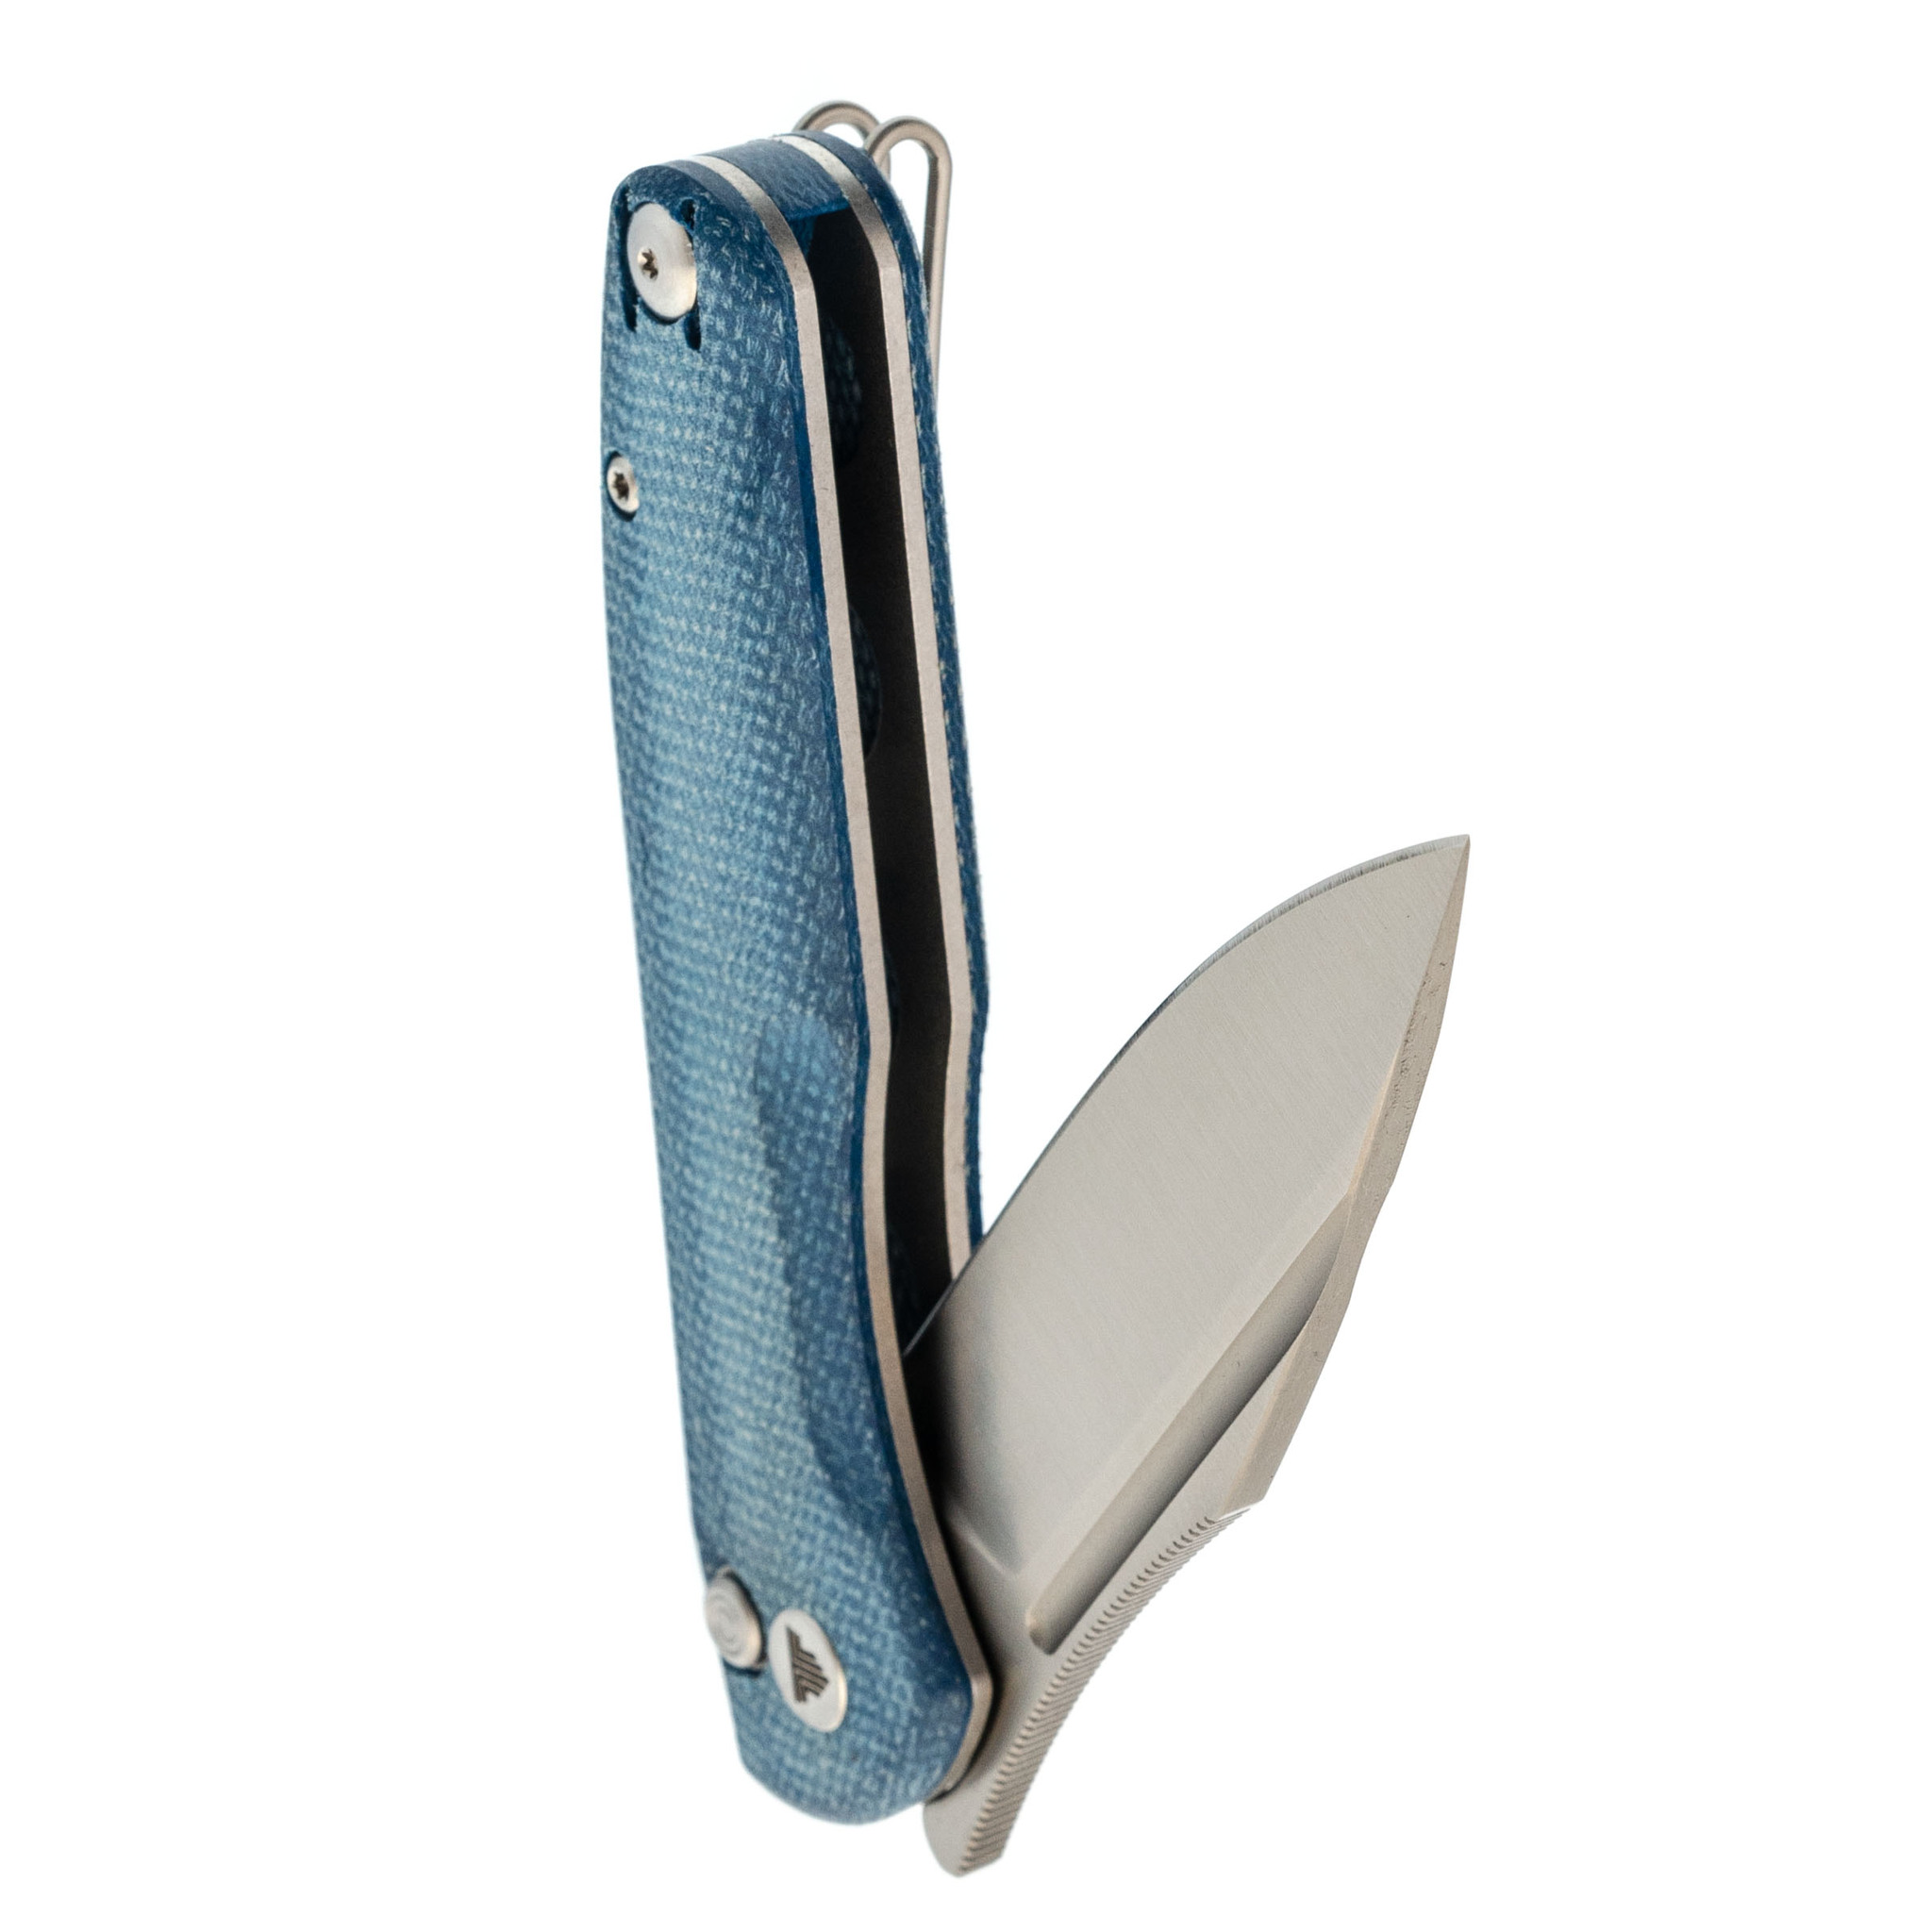 Складной нож Trivisa Antliae-04LMW, сталь 14C28N, рукоять микарта, синий - фото 4